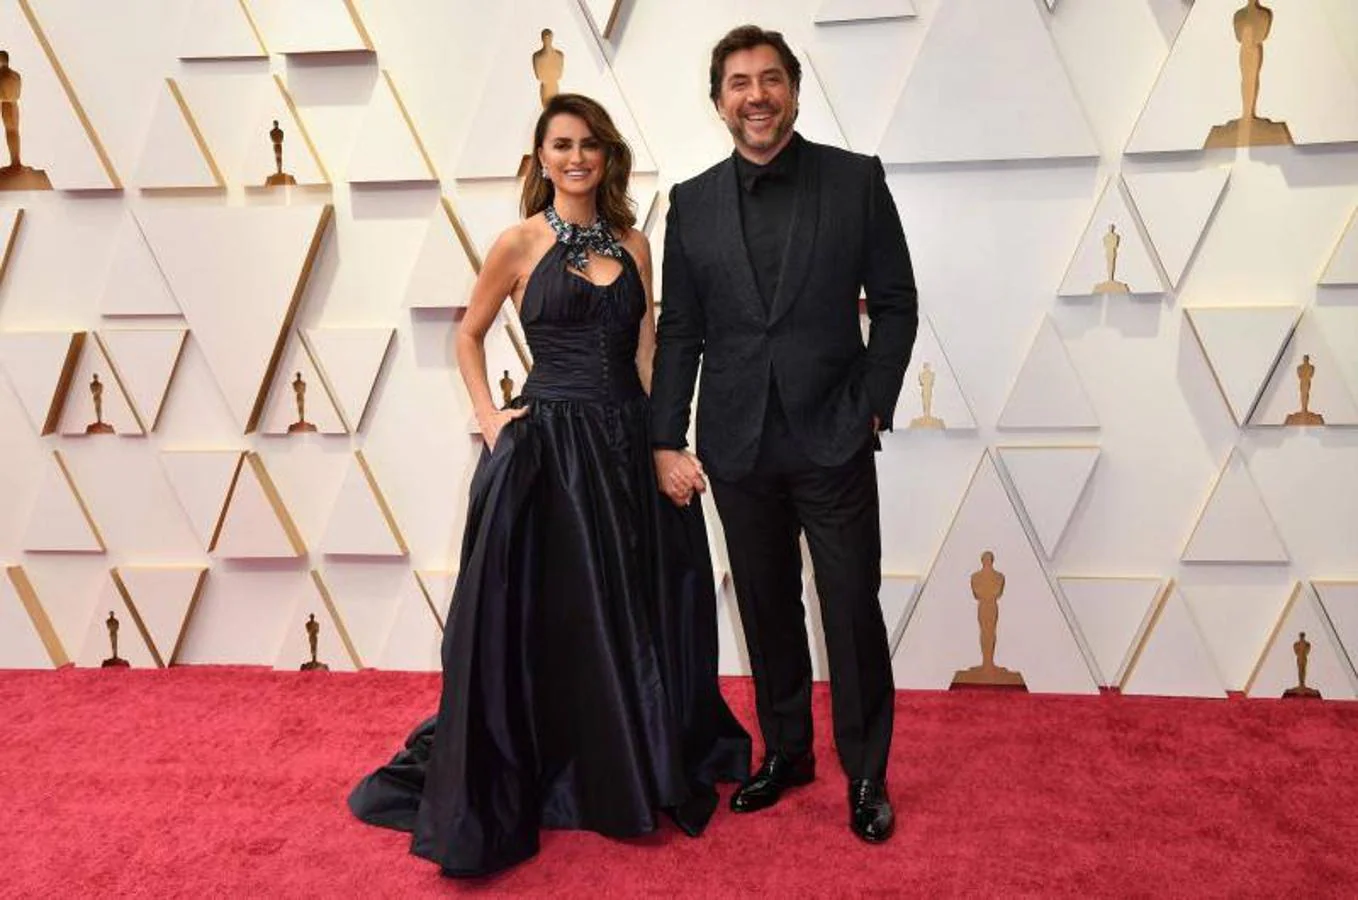 La alfombra roja de los premios Oscar 2020, en imágenes